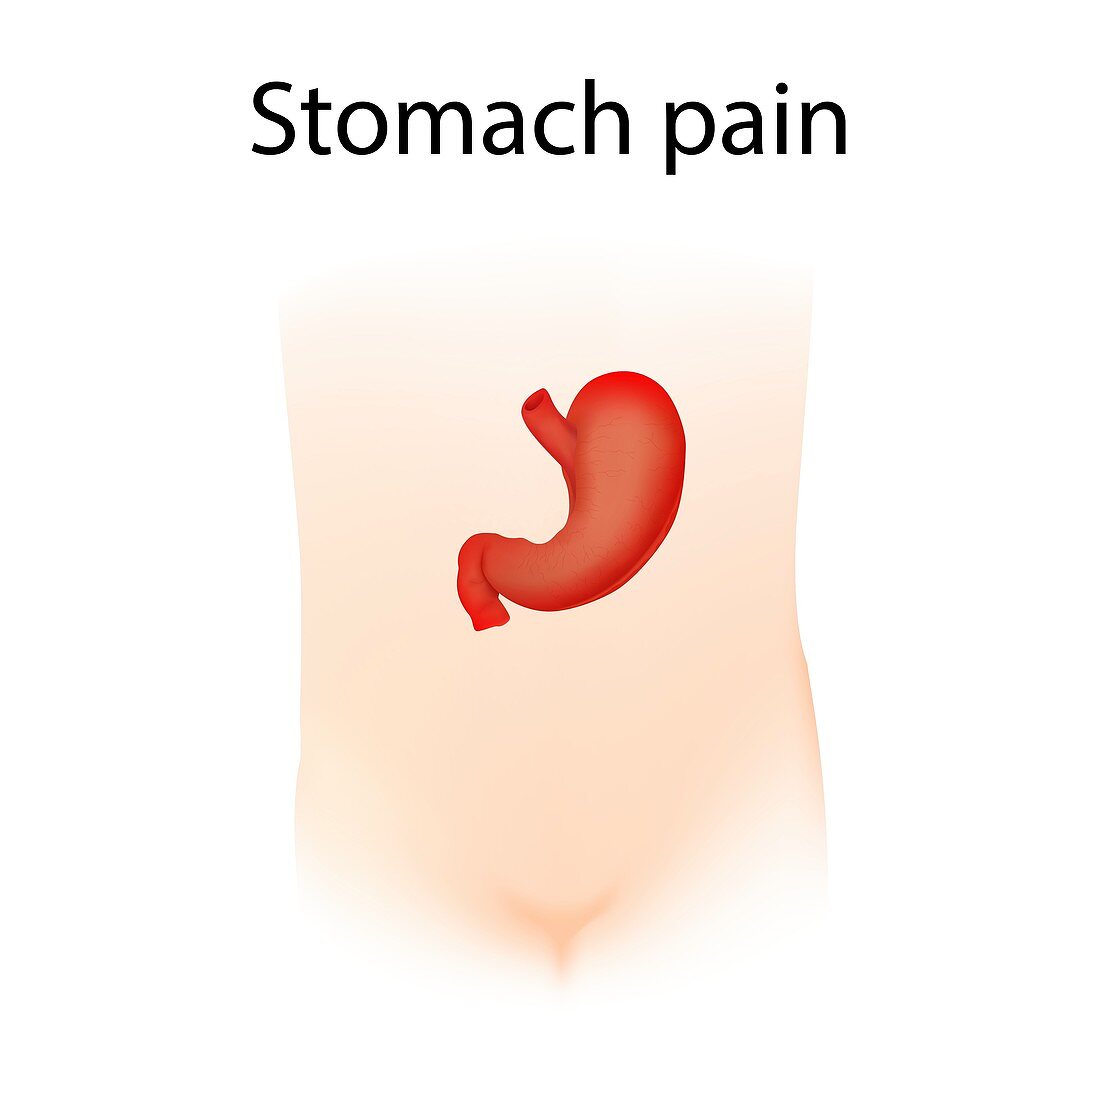 Stomach pain,illustration